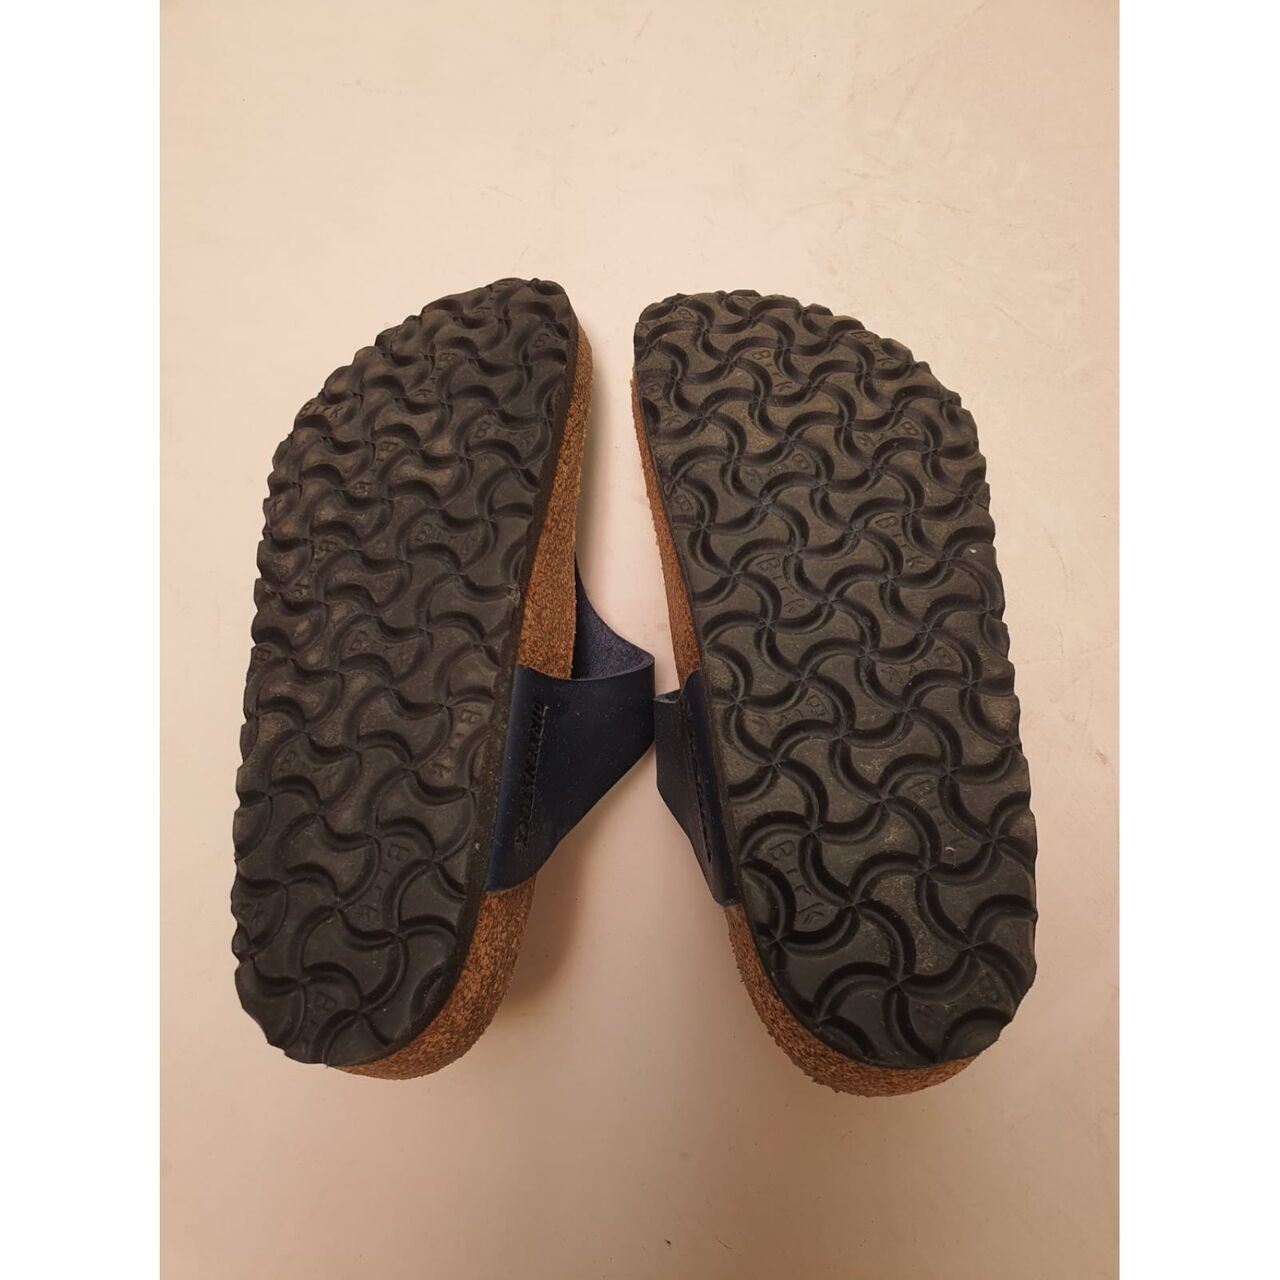 Birkenstock Blue Sandals